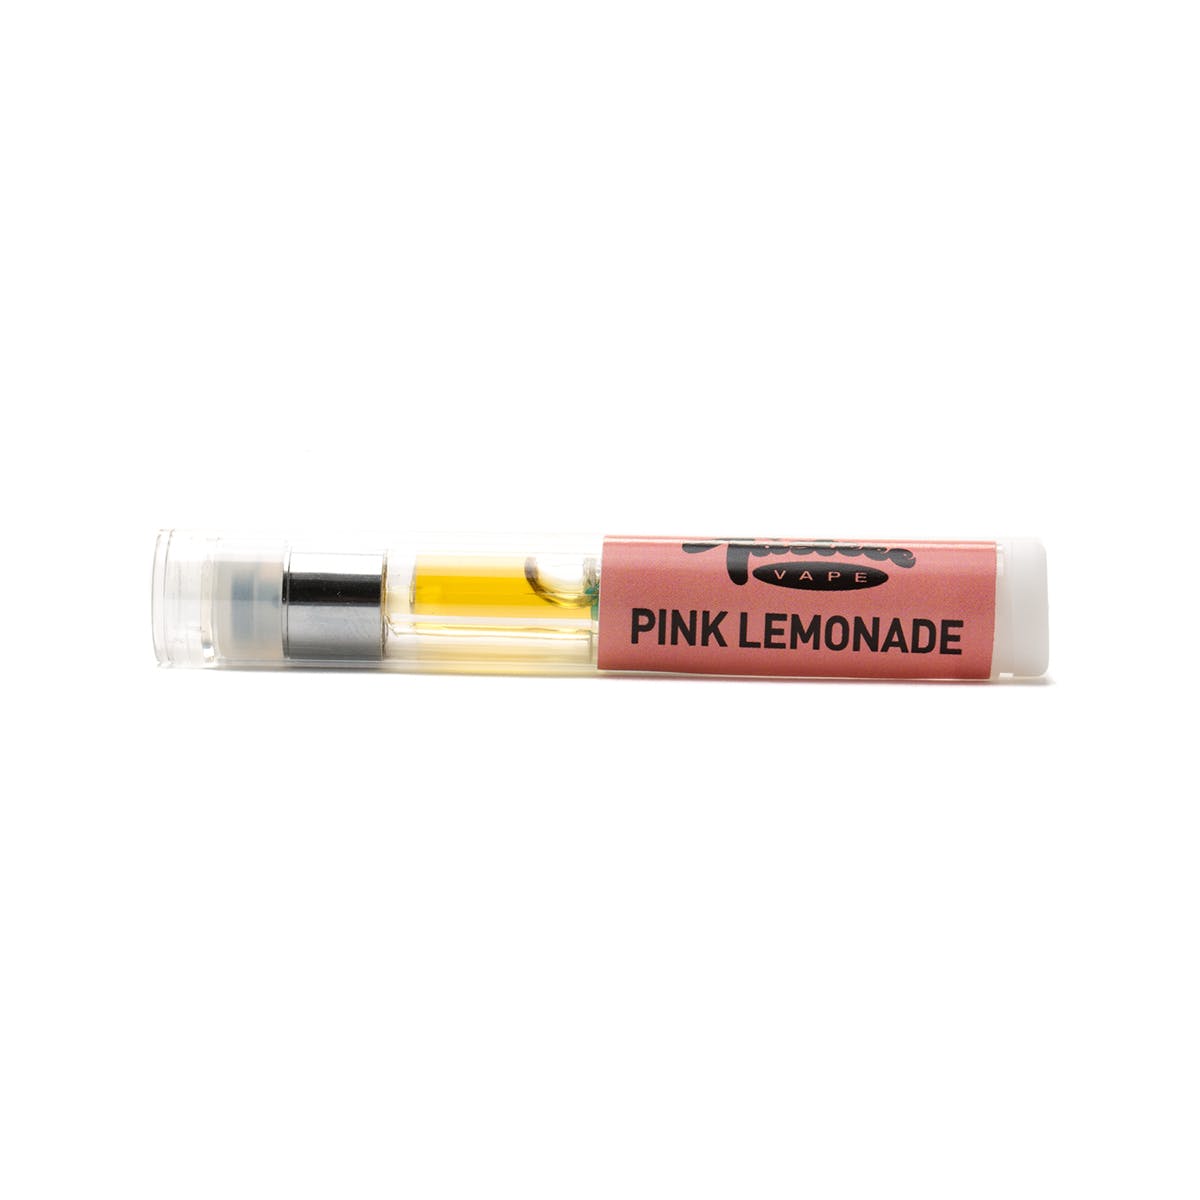 Pink Lemonade Tasteee Cartridge